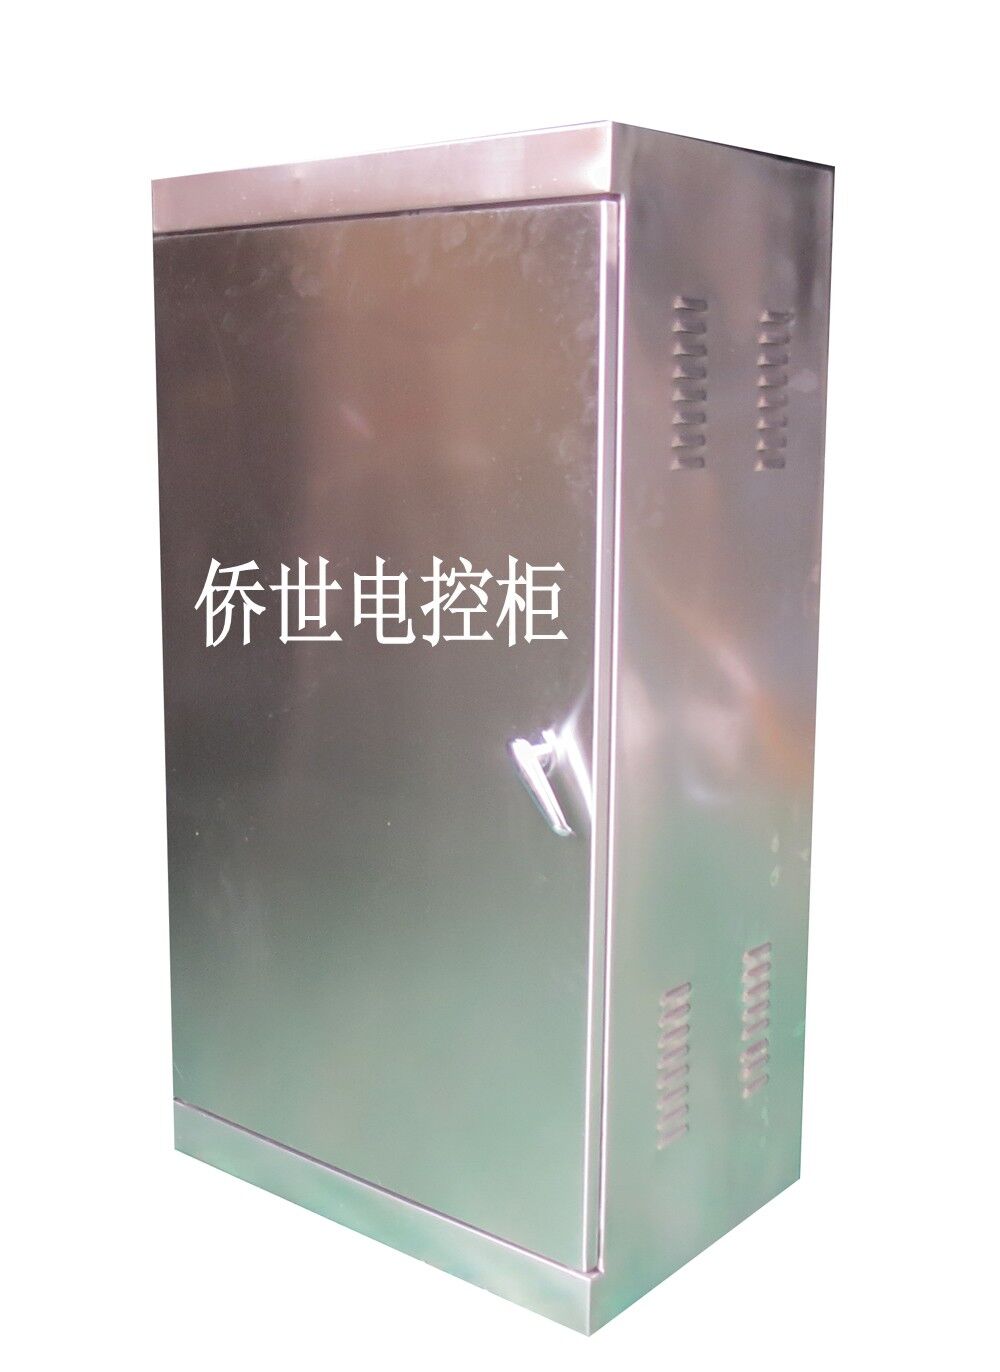 上海侨世电气提供报价合理的不锈钢电控柜|价位合理的不锈钢电控柜